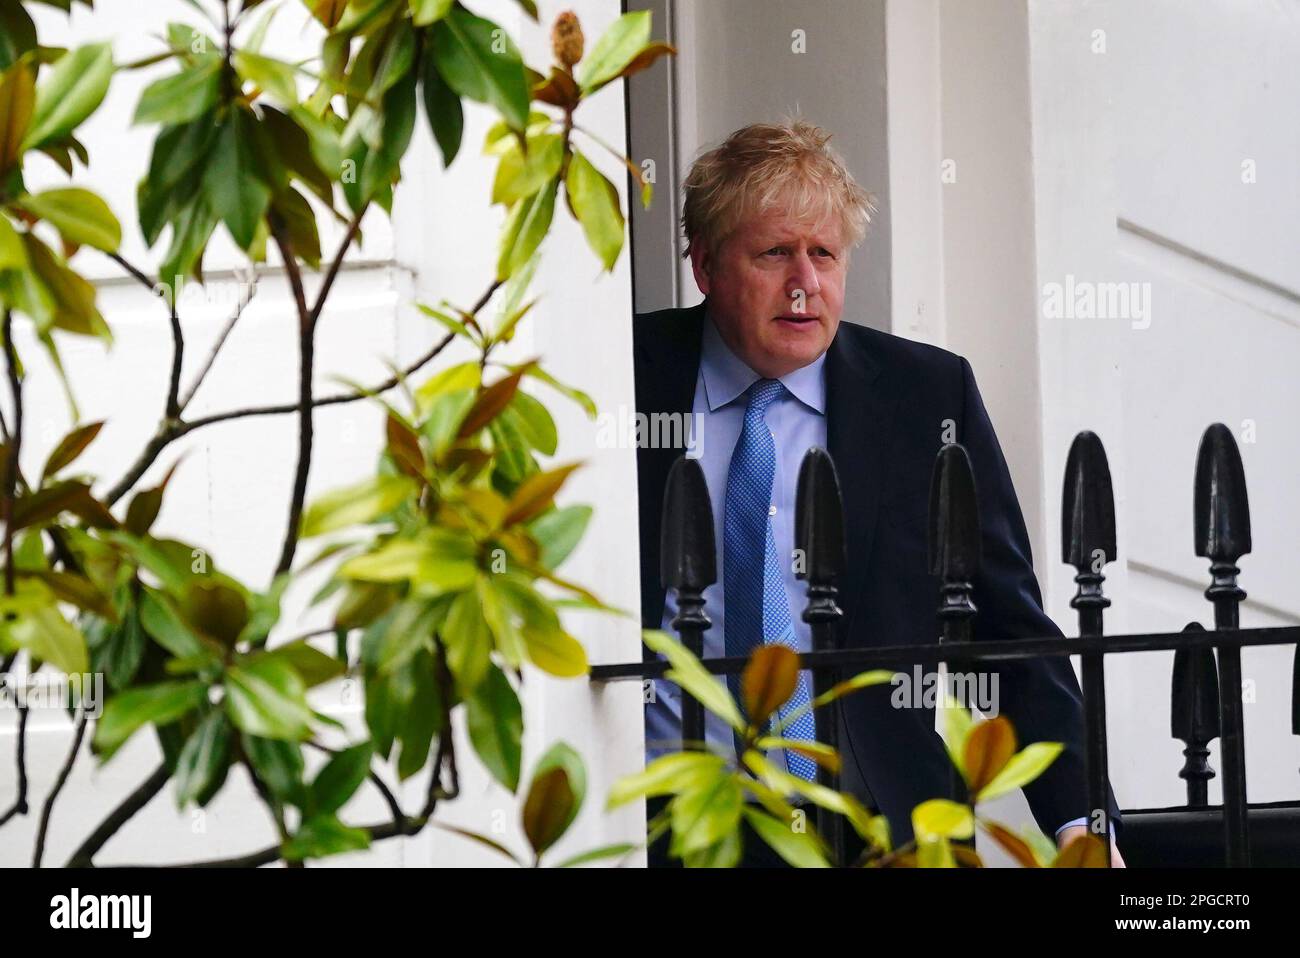 L'ancien Premier ministre Boris Johnson quitte son pays à Londres. M. Johnson déposera la preuve qu'il a sciemment induit le Parlement en erreur sur le partygate lors d'une audition du Comité des privilèges des communes à la Maison Portcullis, dans le centre de Londres. Date de la photo: Mercredi 22 mars 2023. Banque D'Images